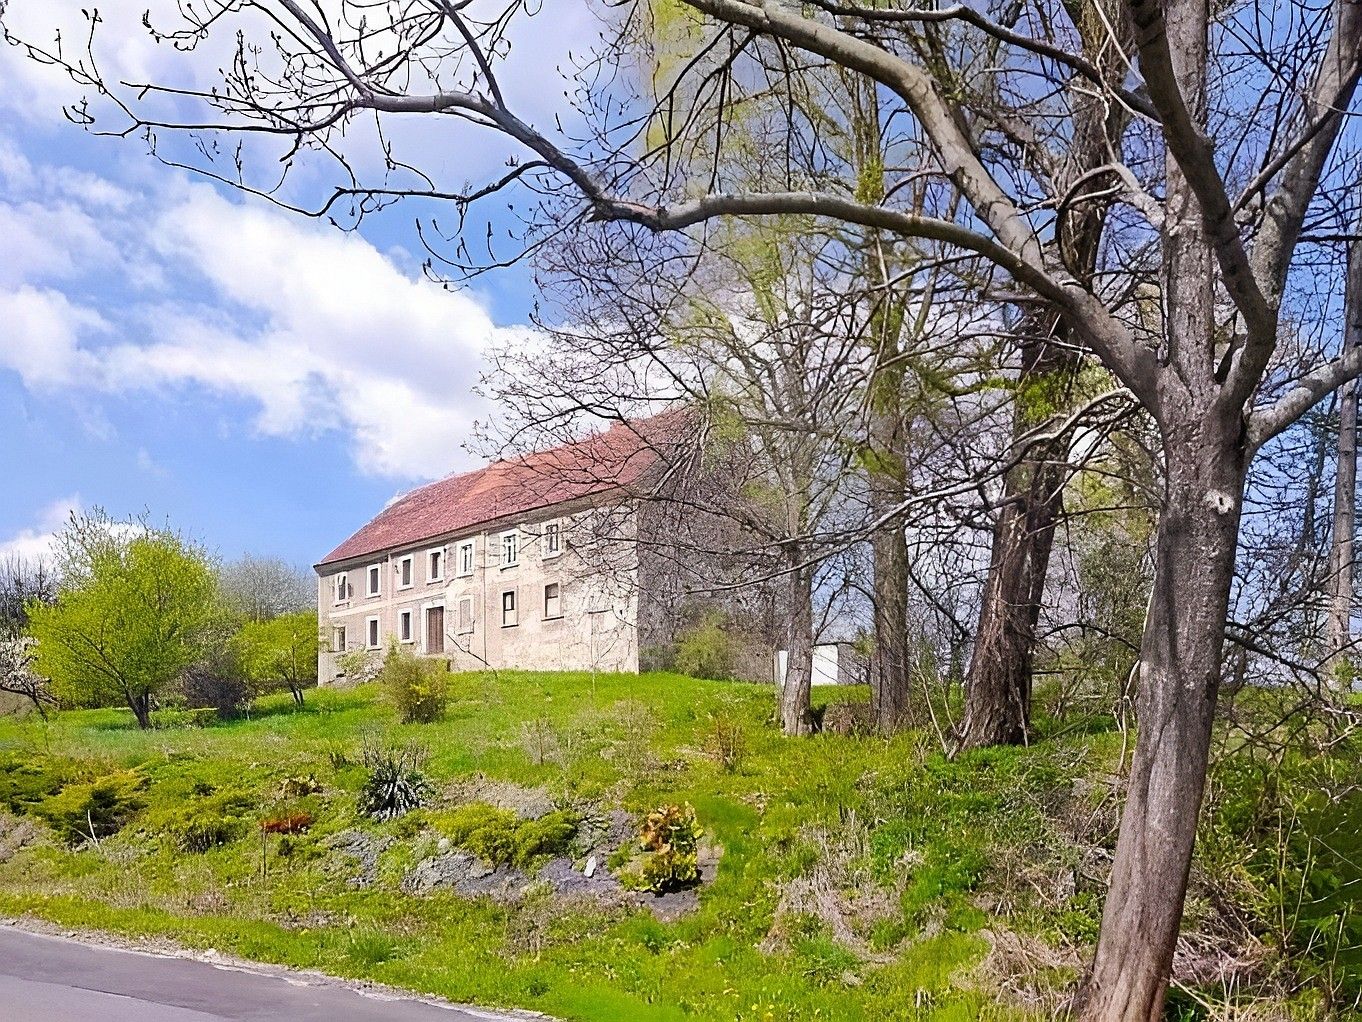 Images Karakteristiek landhuis in het Jizeragebergte, Neder-Silezië